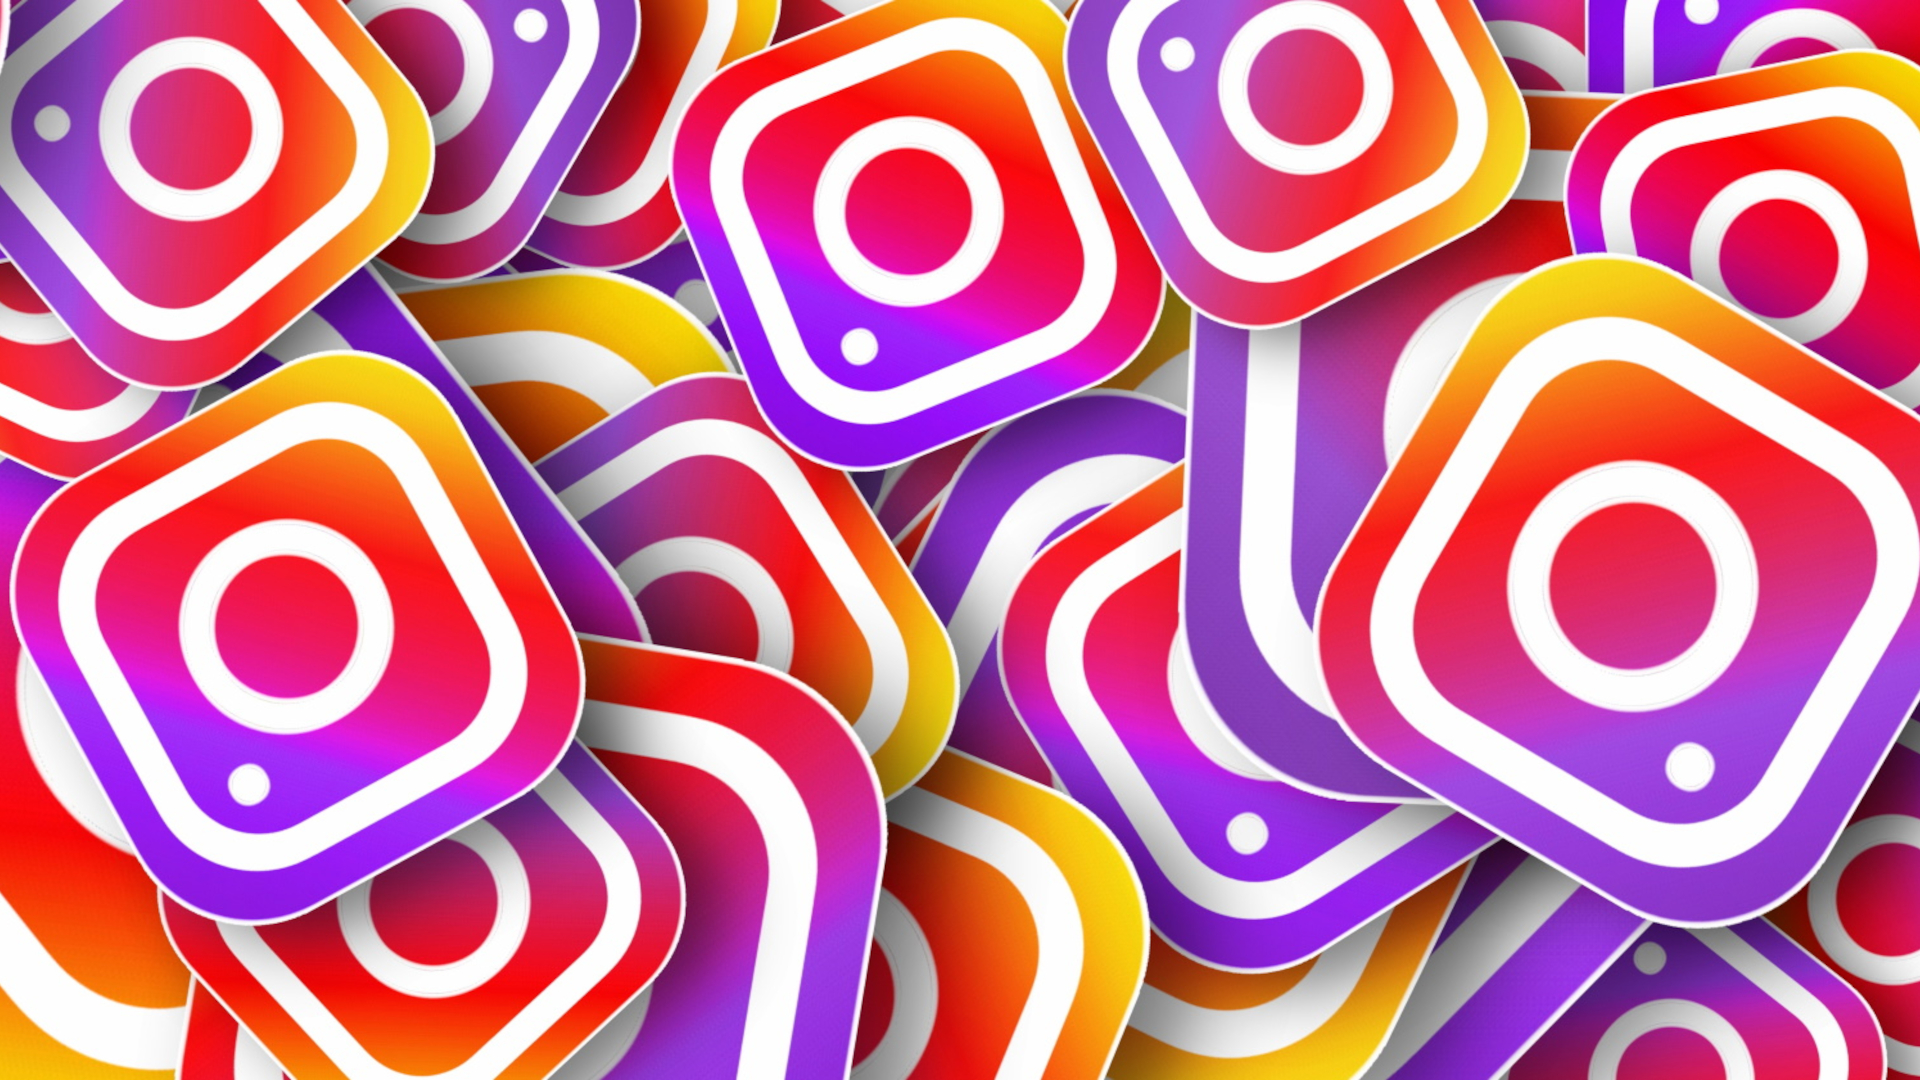 Instagram attento ai giovani, nuove funzioni in arrivo